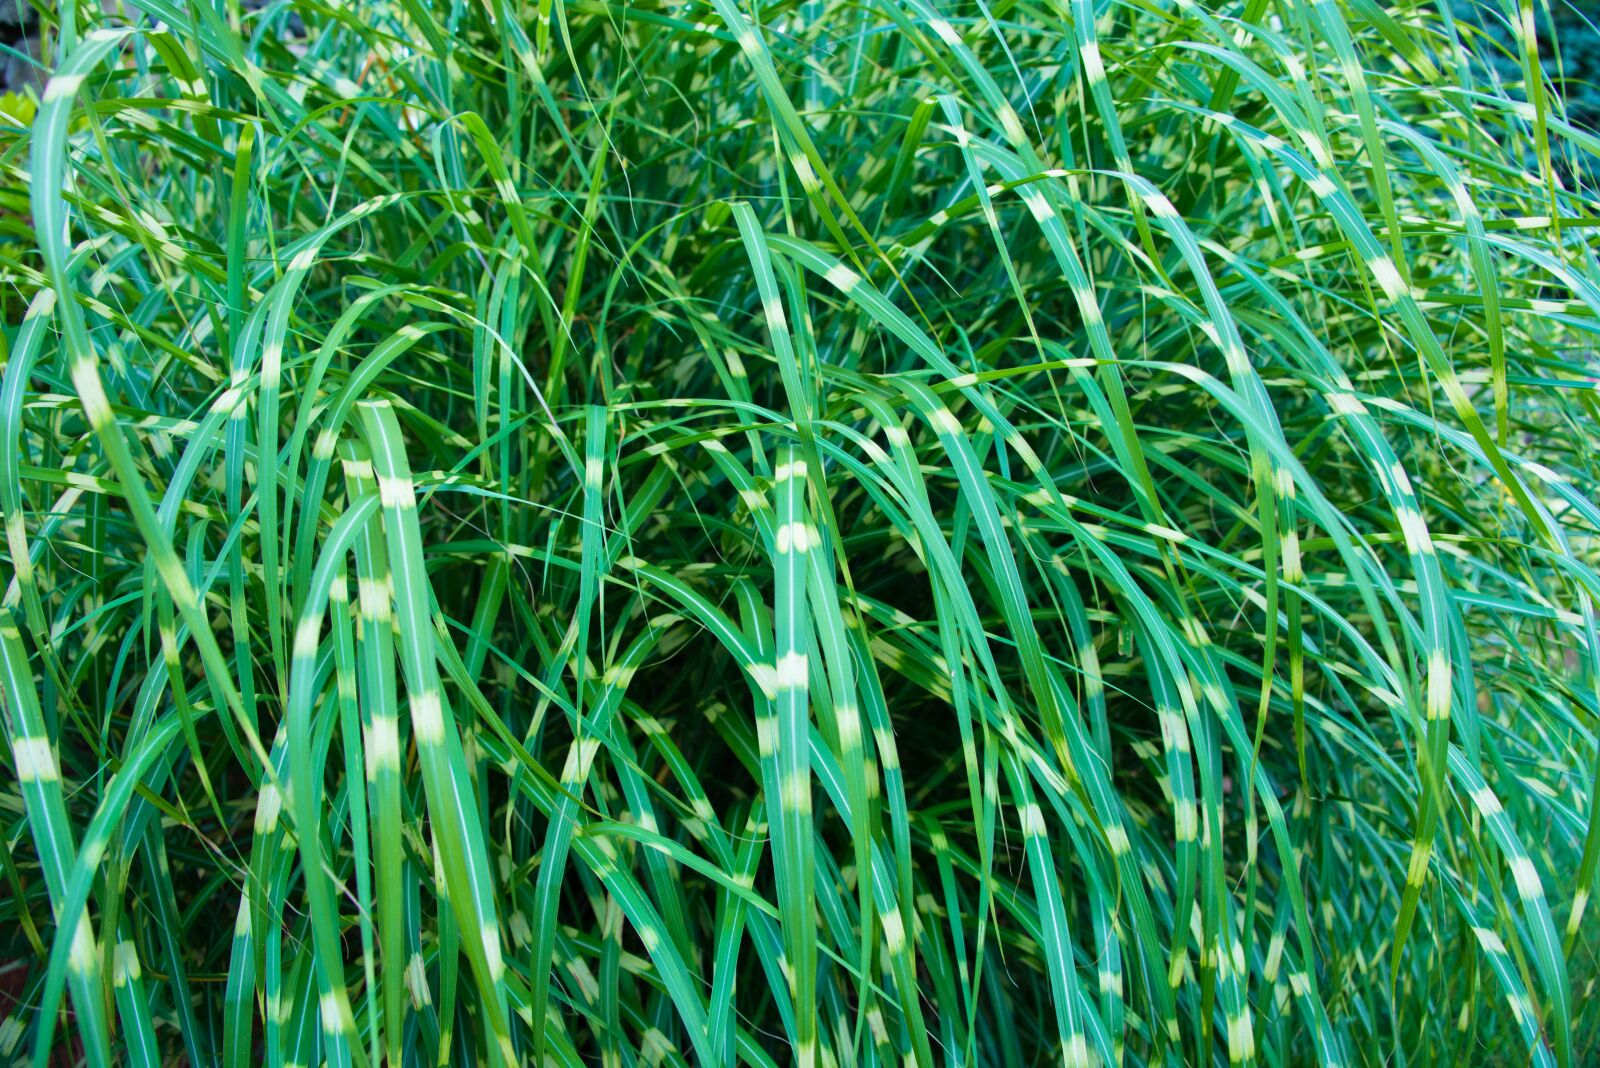 Nikon D800 sample photo. Grass, grass blades, garden photography